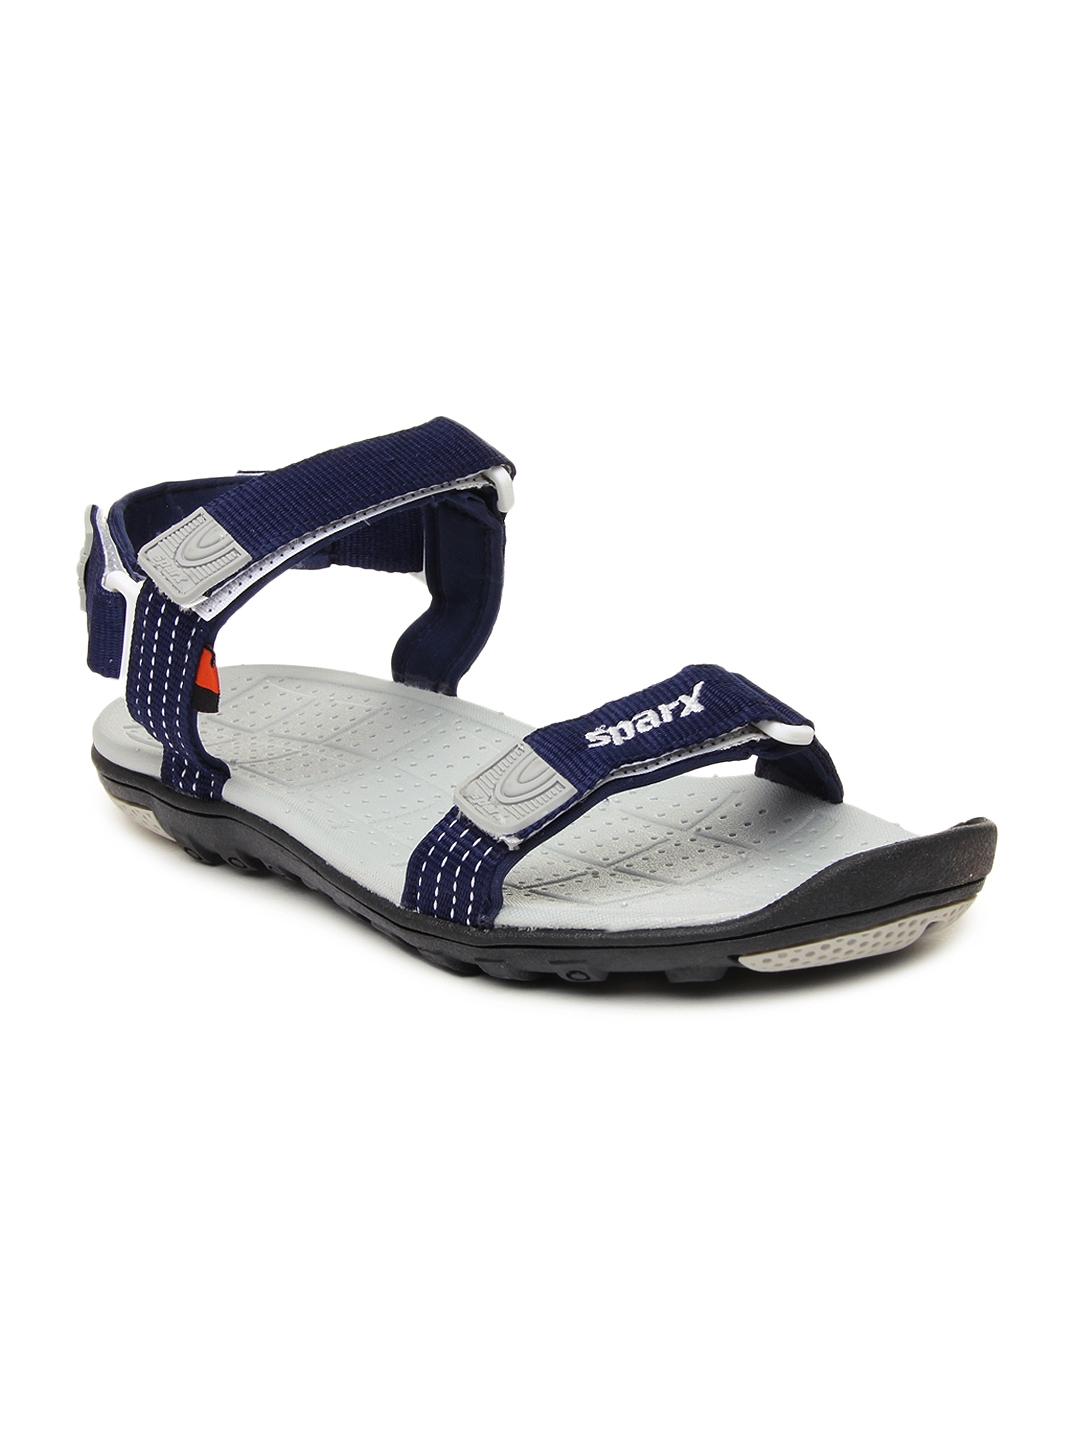 Buy SANDAL 704 GENTS Men Sandals online | Looksgud.in